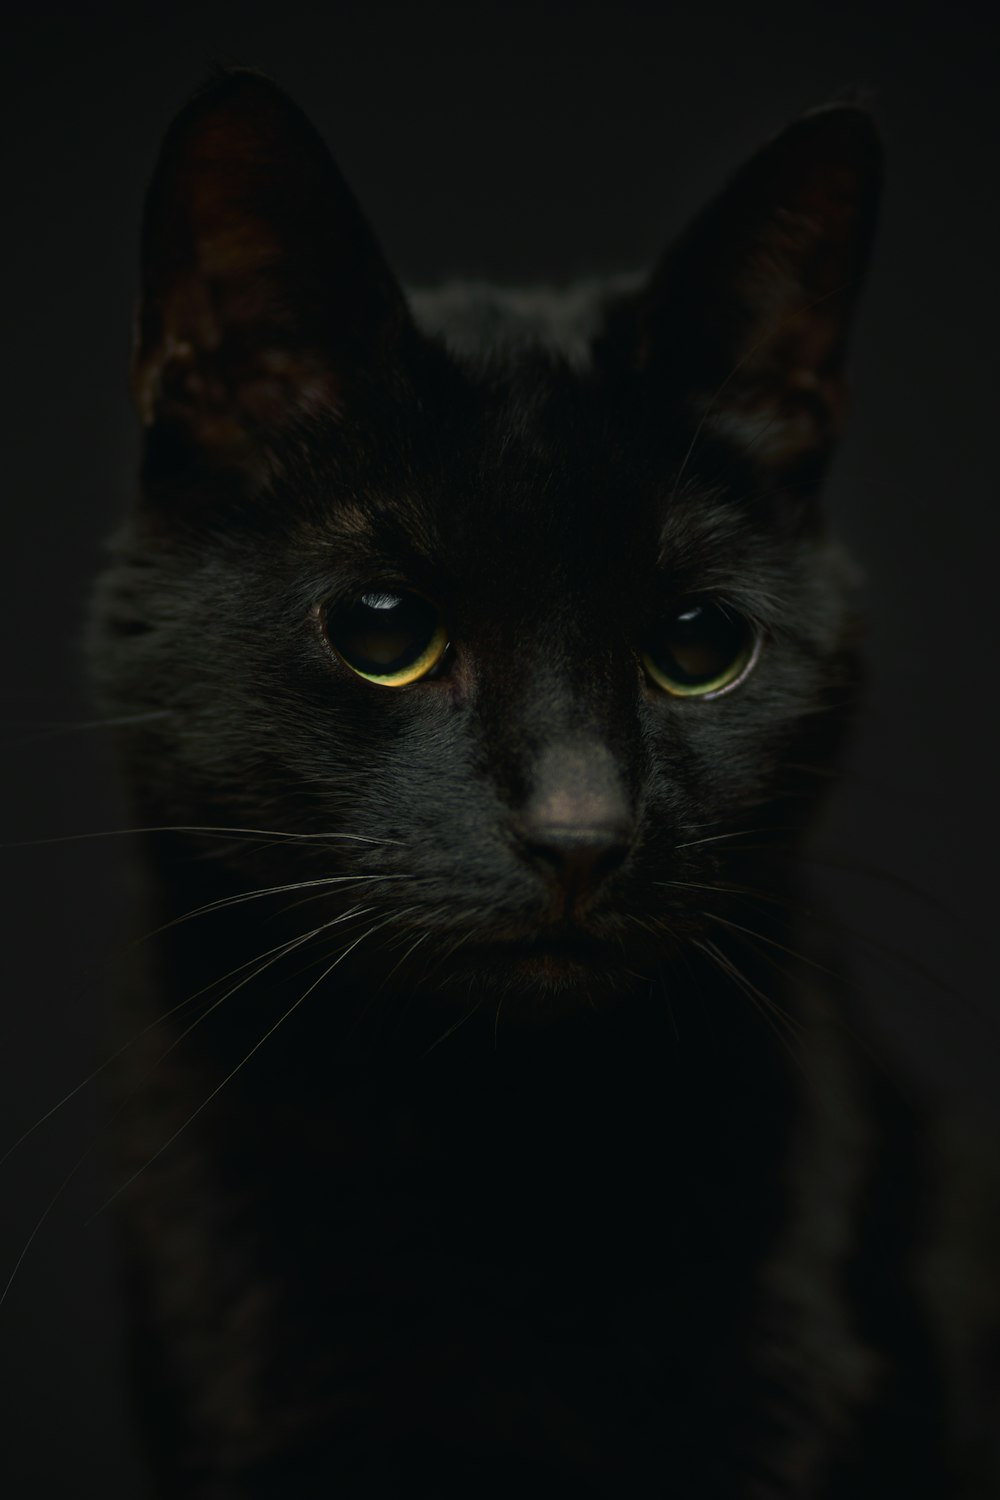 黄色い目をした黒猫の接写